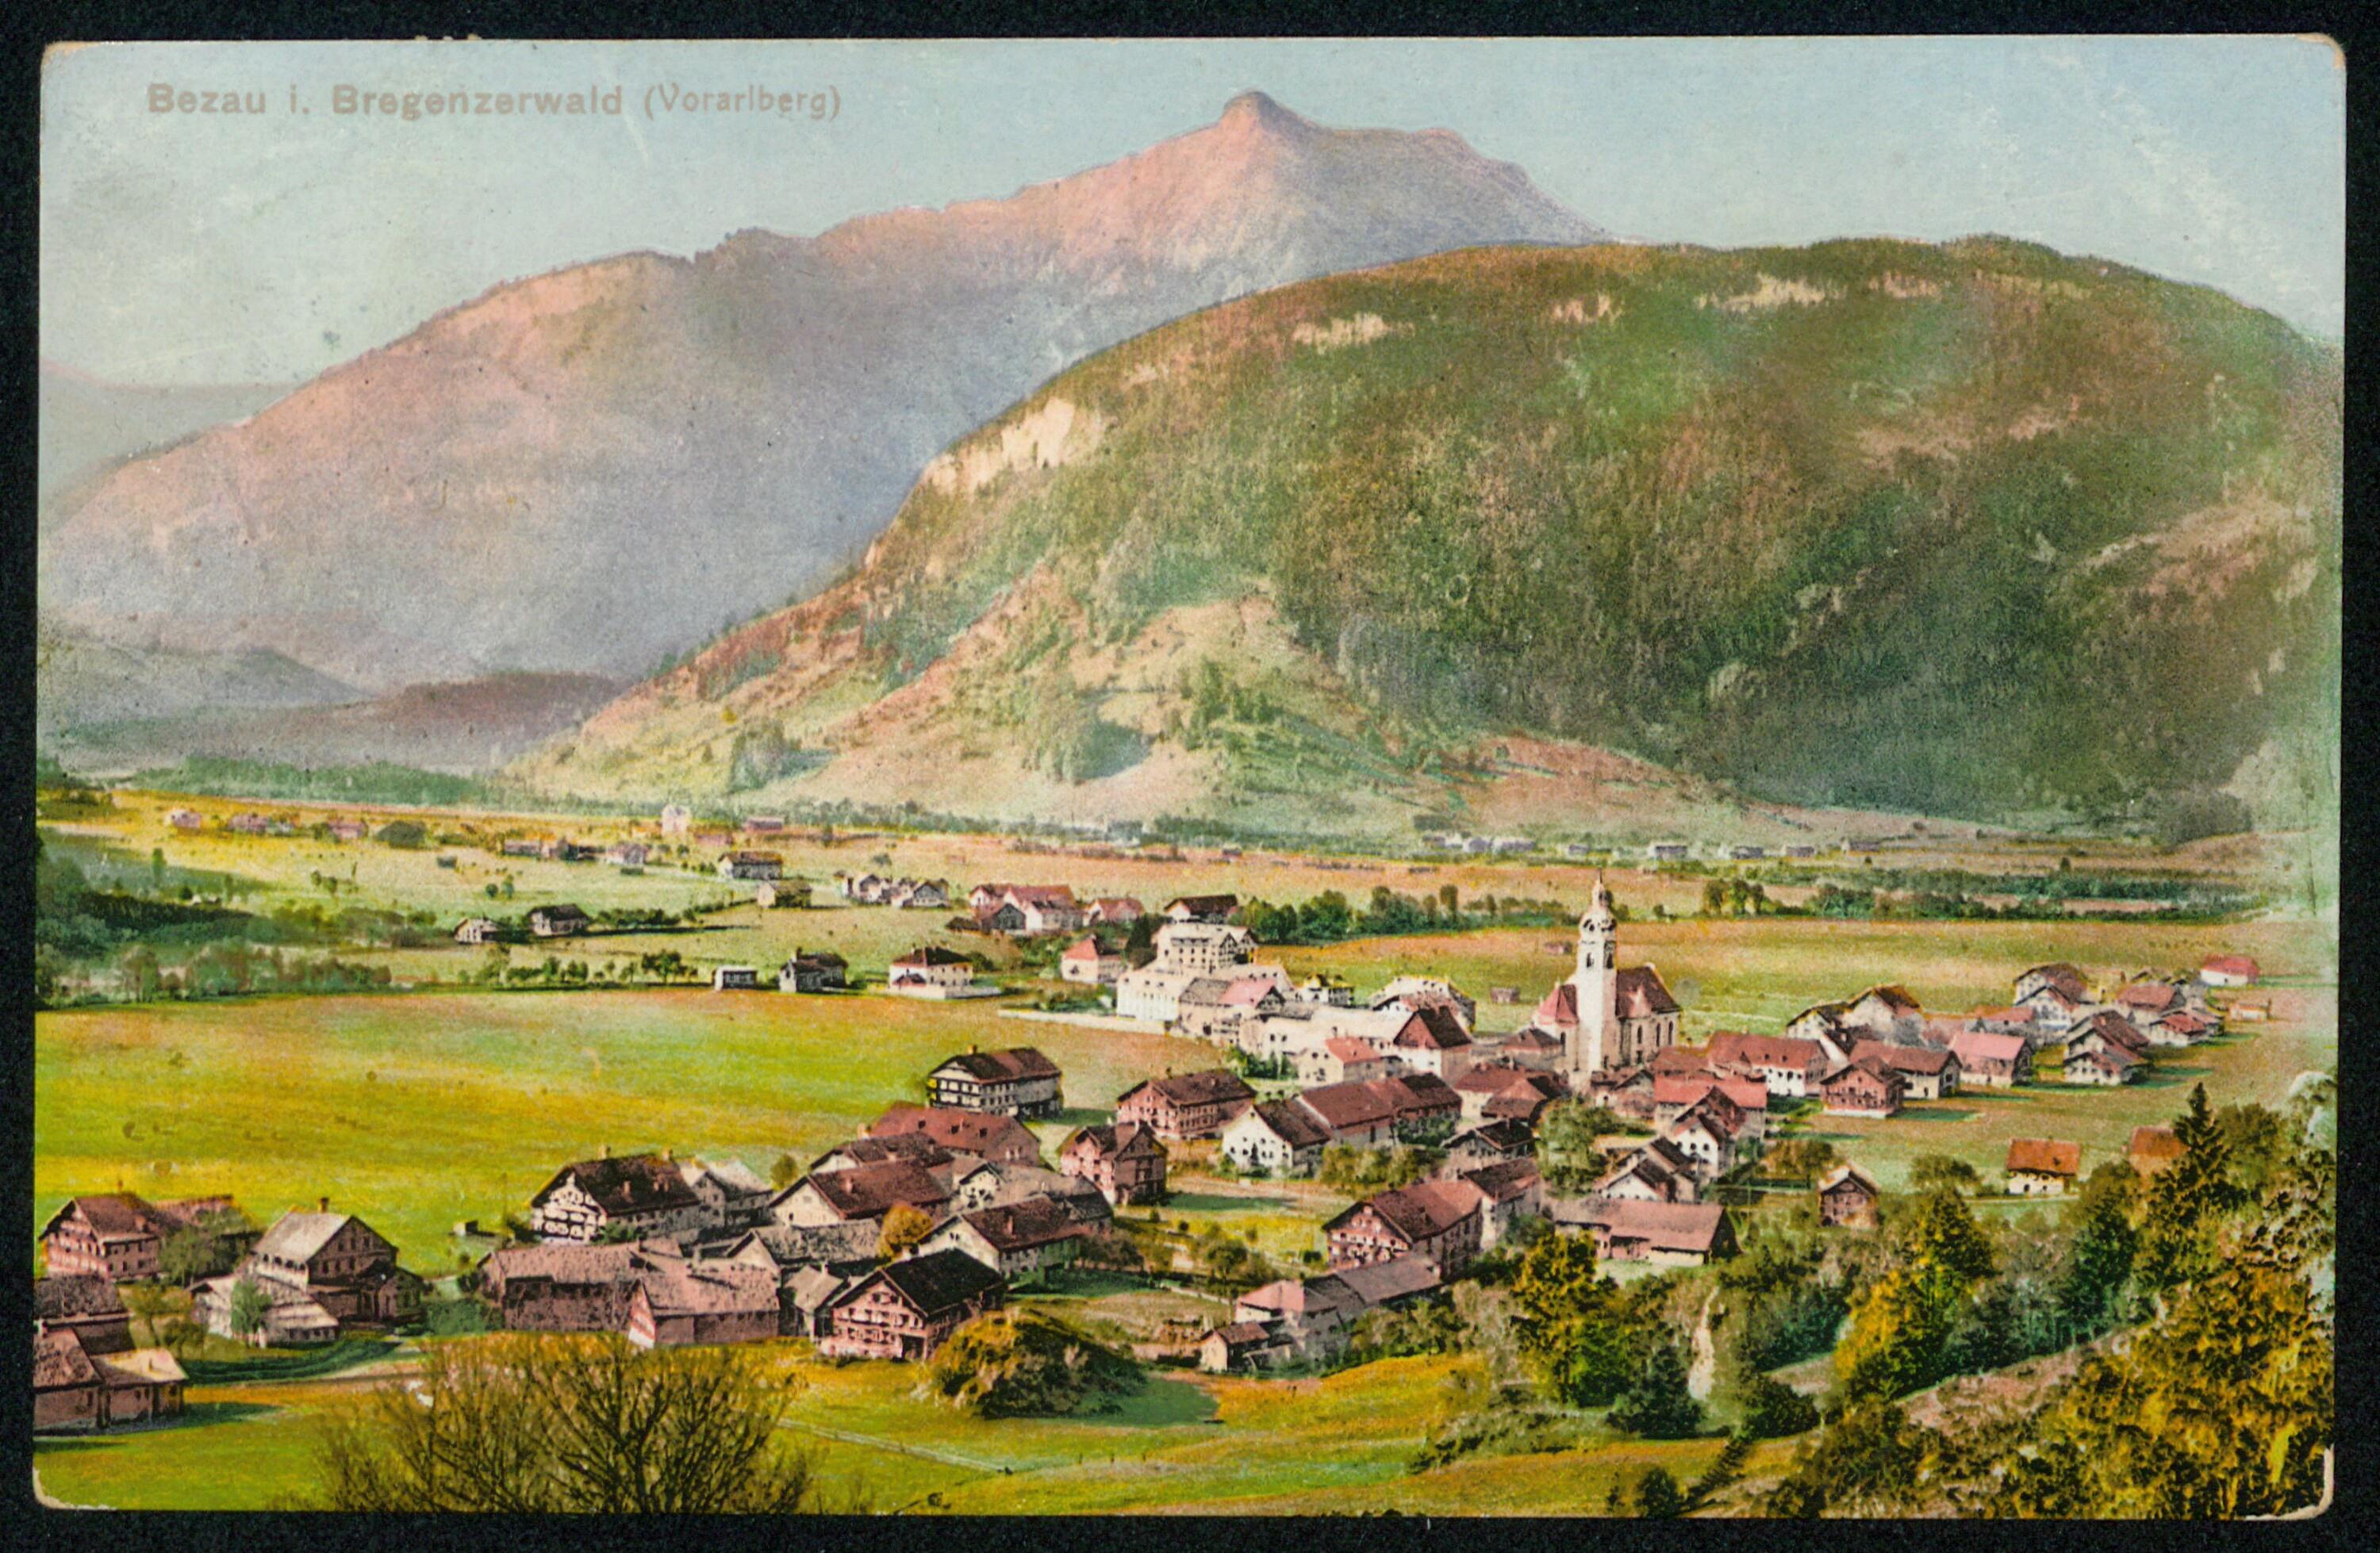 Bezau i. Bregenzerwald (Vorarlberg)></div>


    <hr>
    <div class=